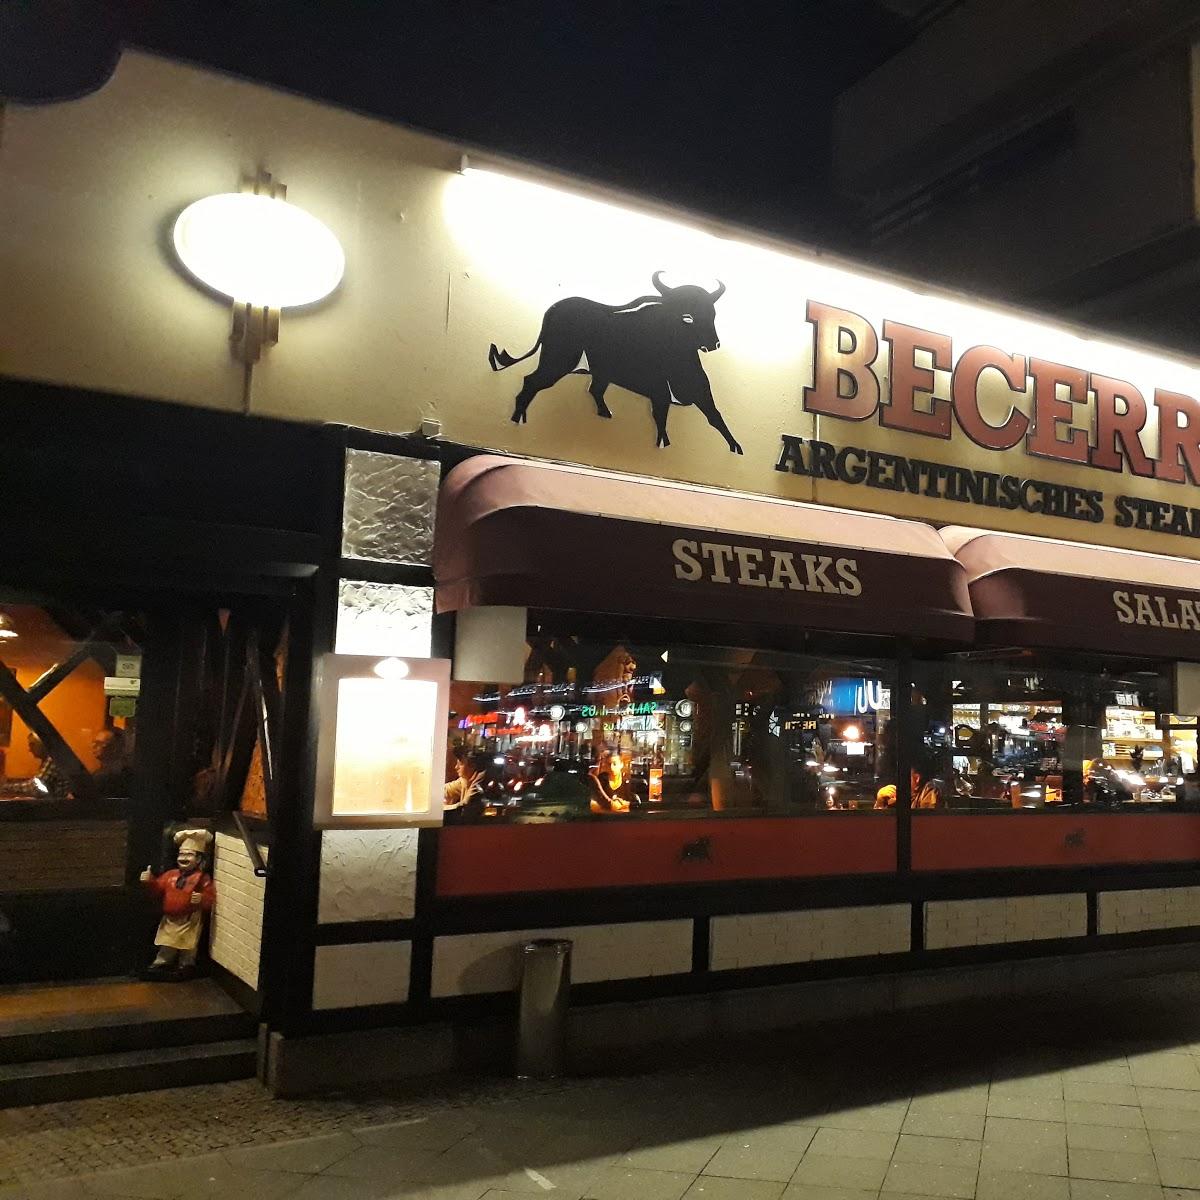 Restaurant "Becerro" in Berlin